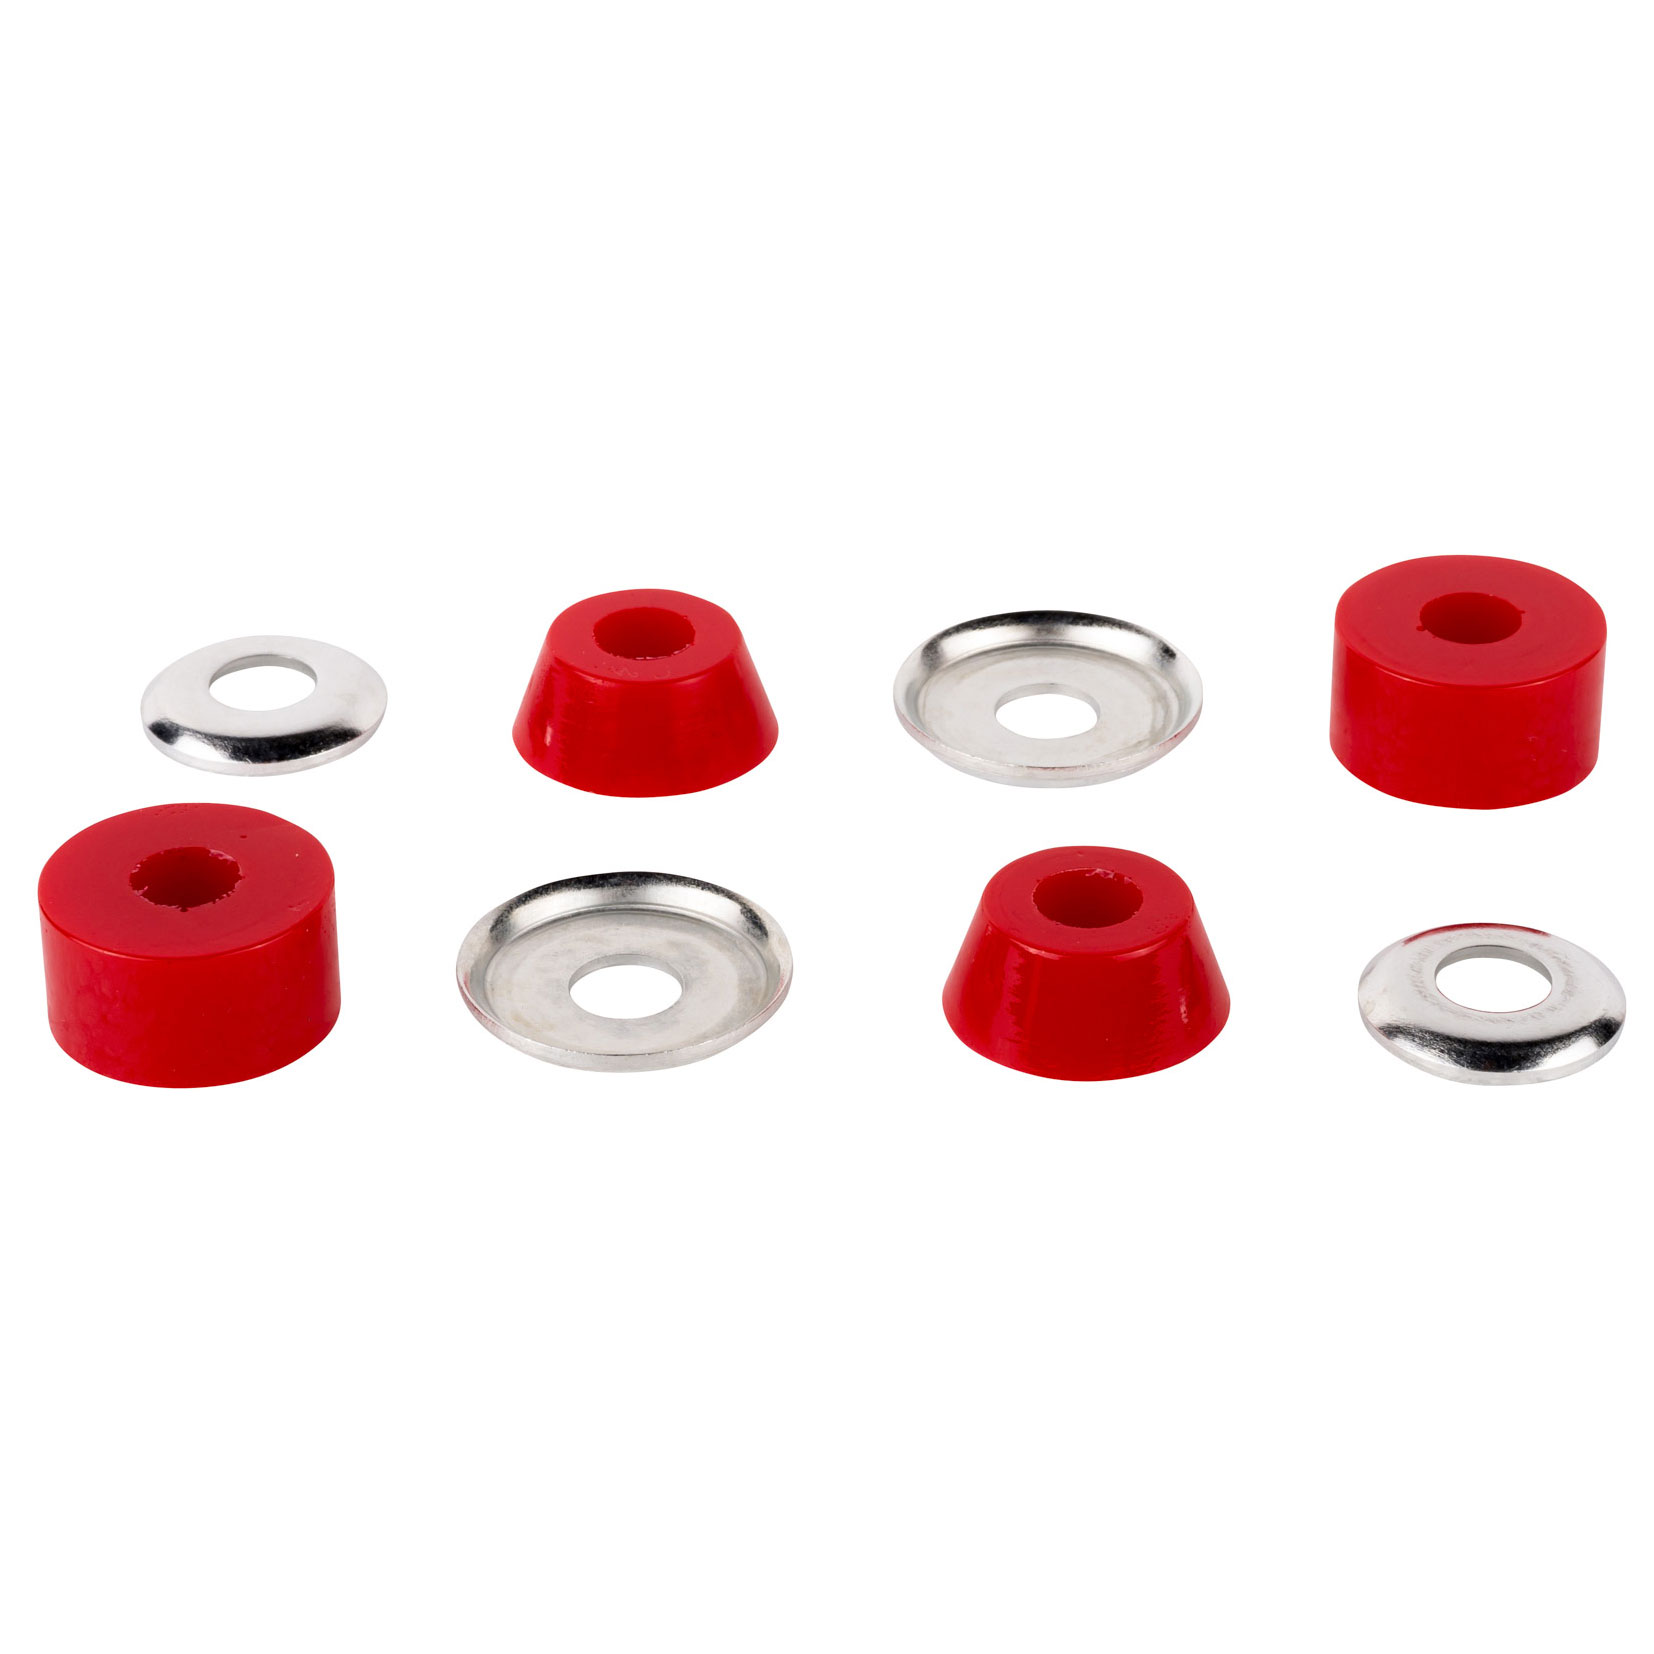 Independent Lenkgummis Standard Cylinder 88A Soft (red)